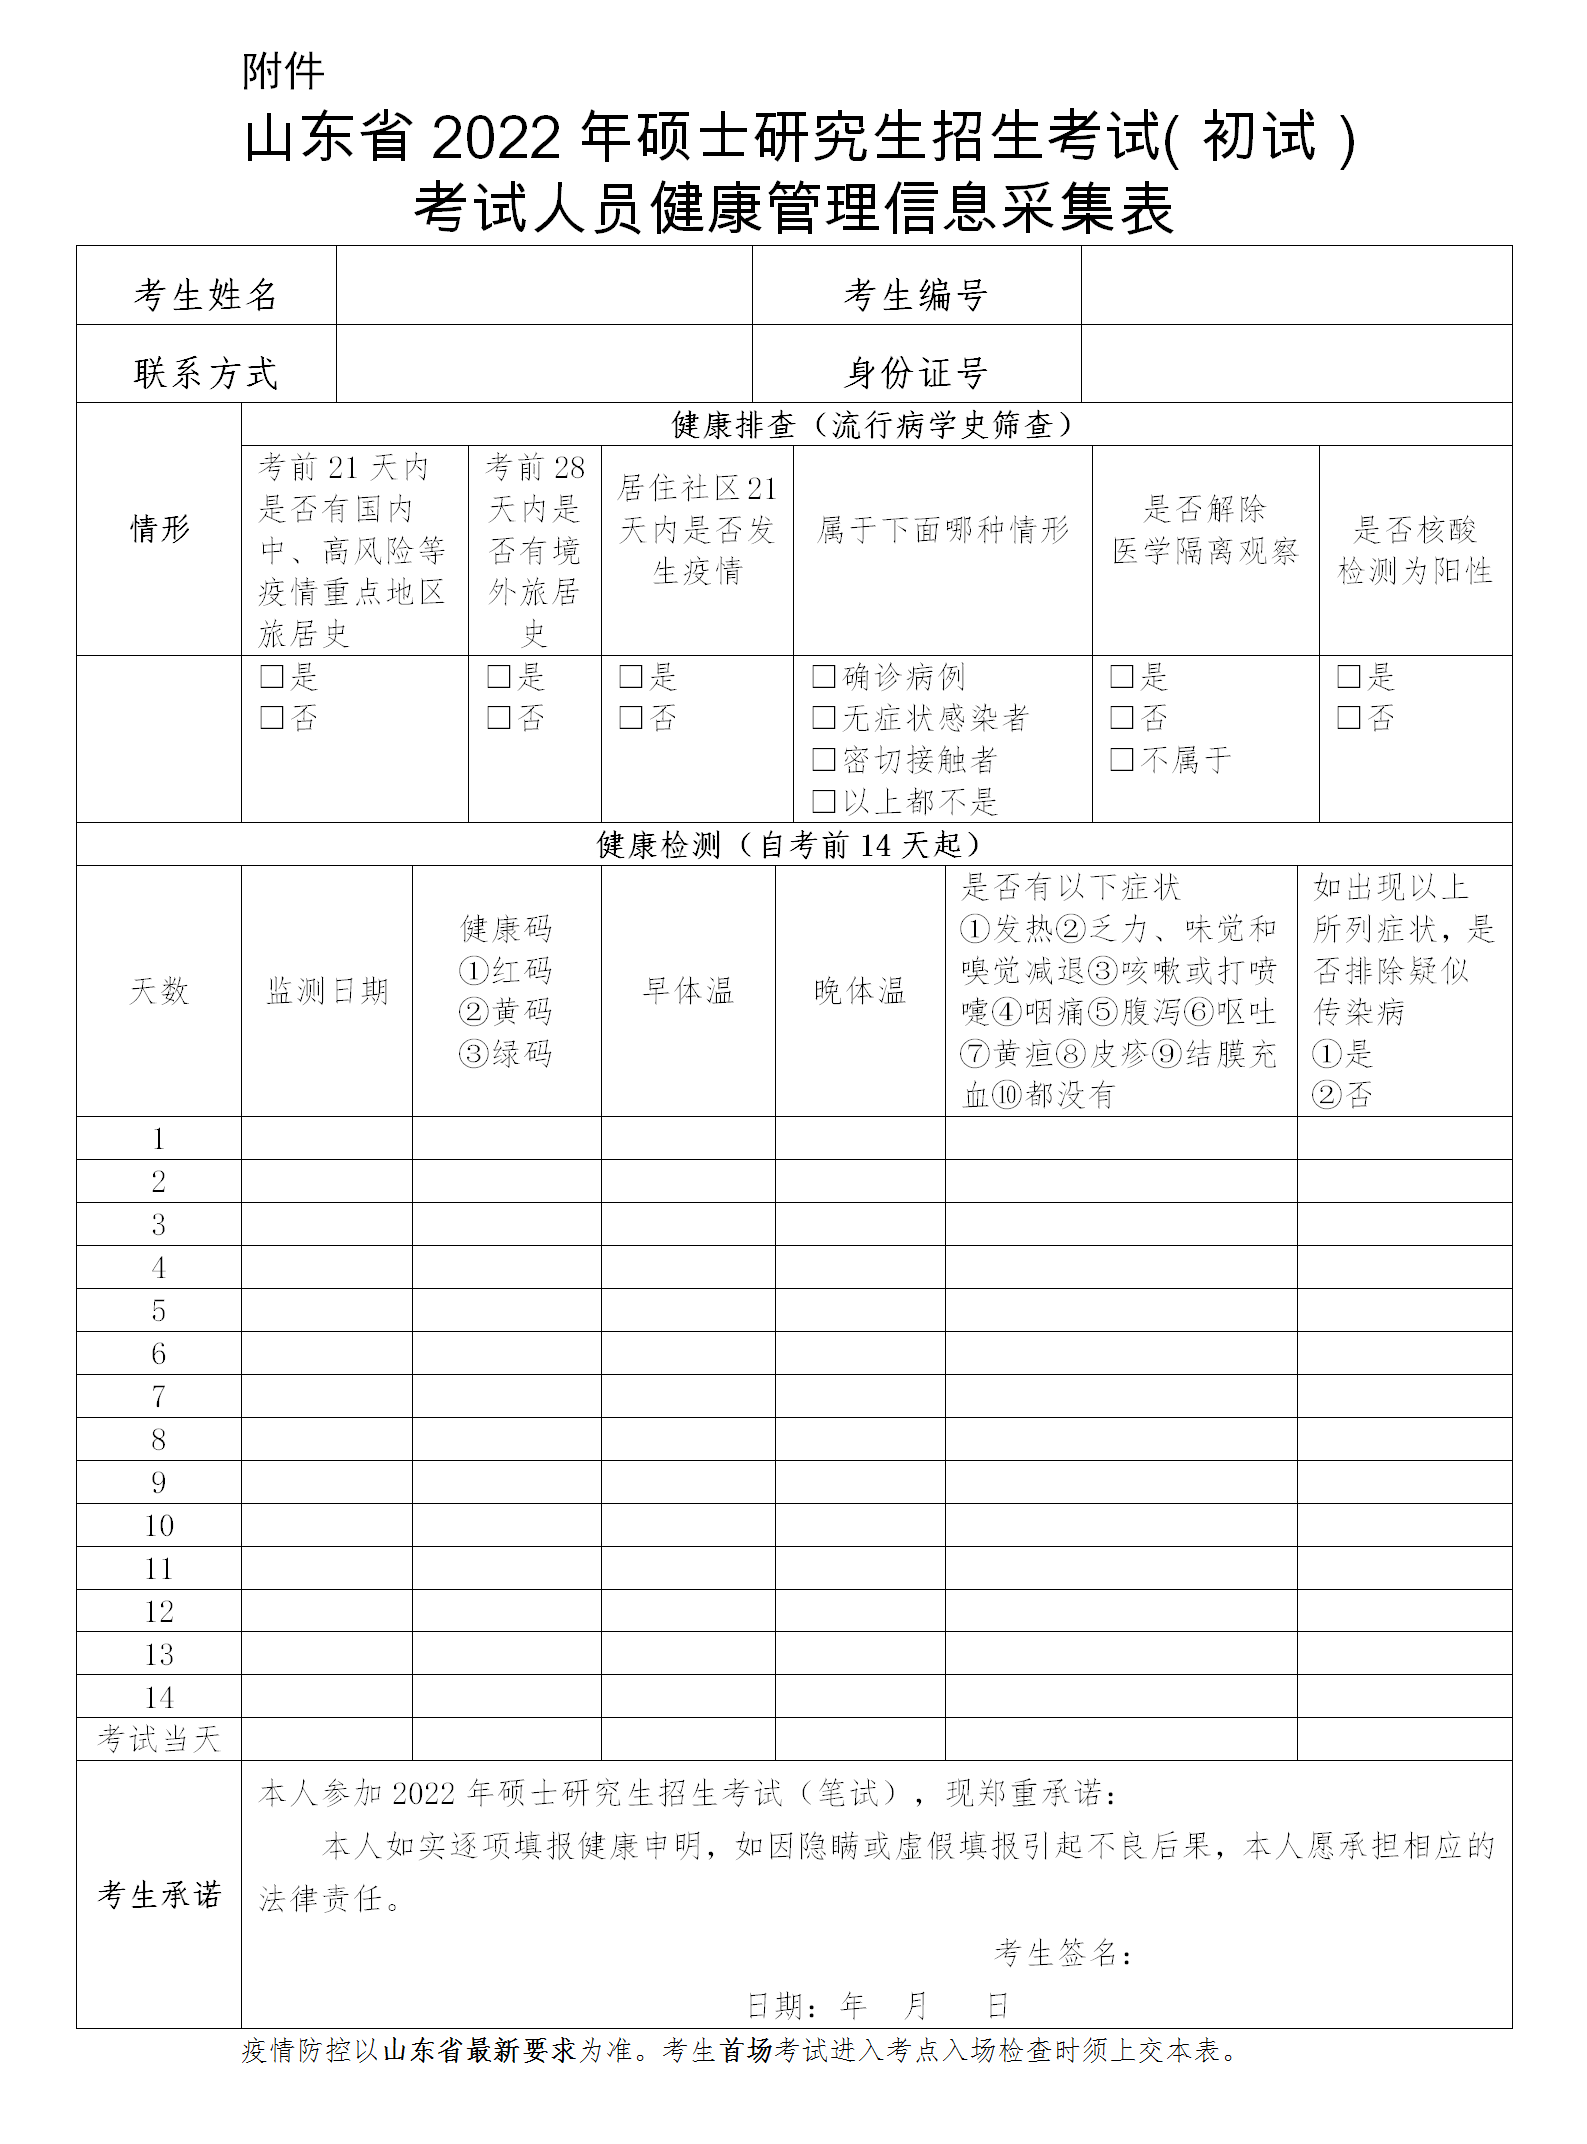 2022年全国硕士研究生招生考试（初试）山东考生应考须知(图1)